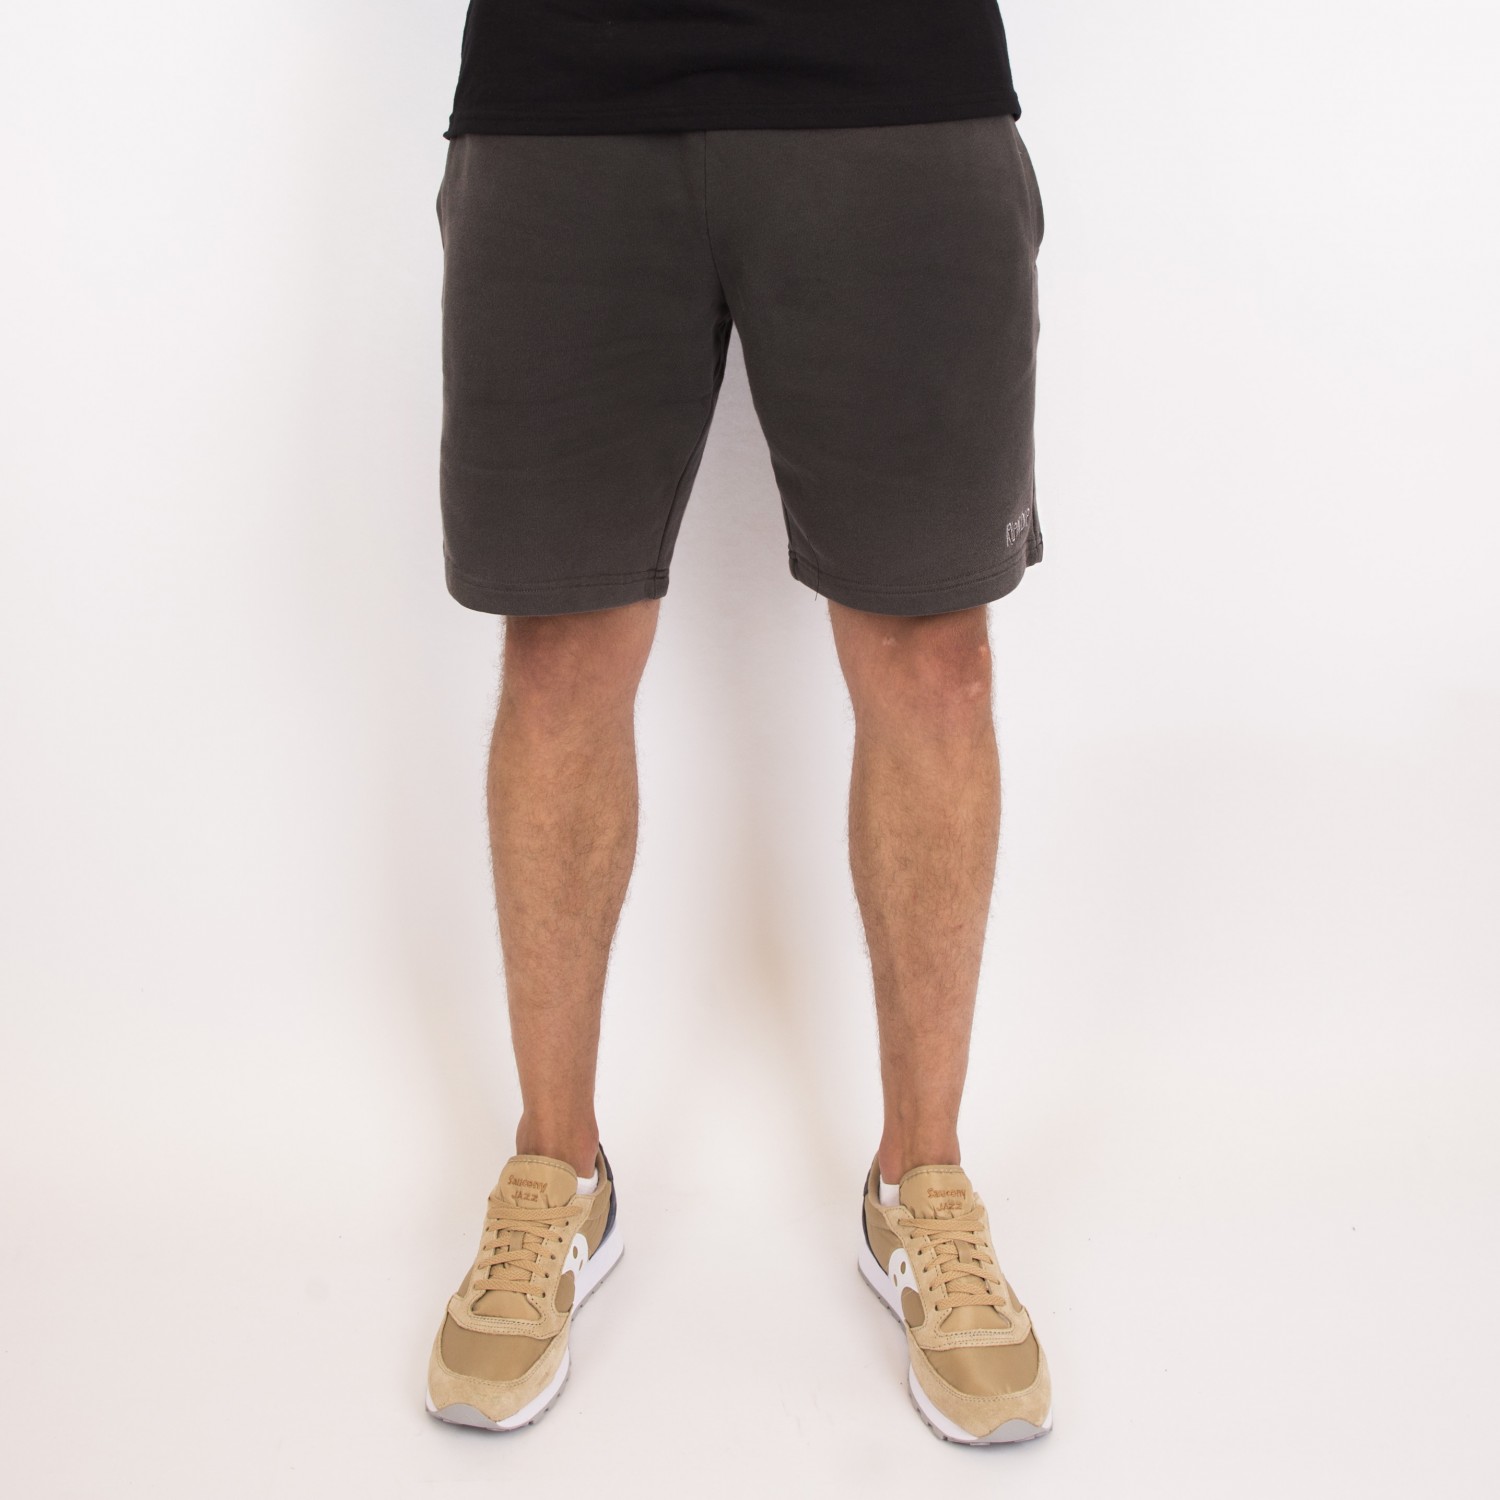 ripndip shorts